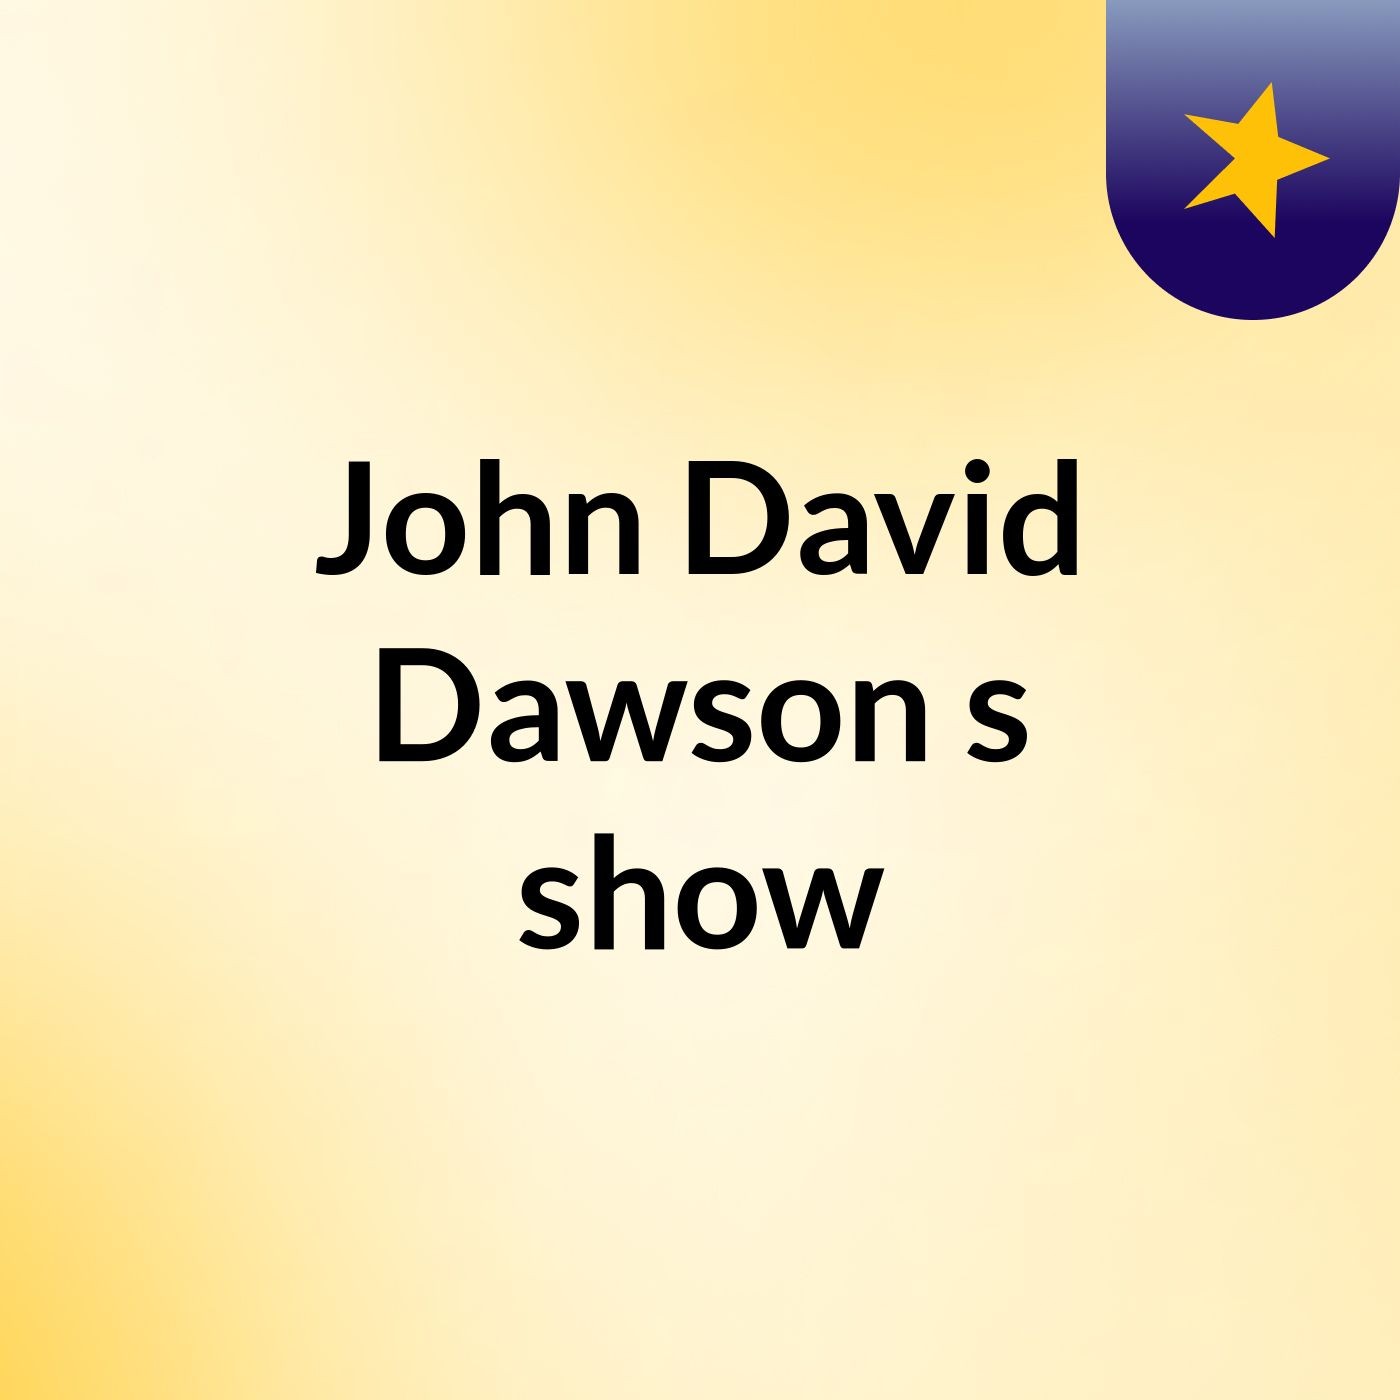 John David Dawson's show